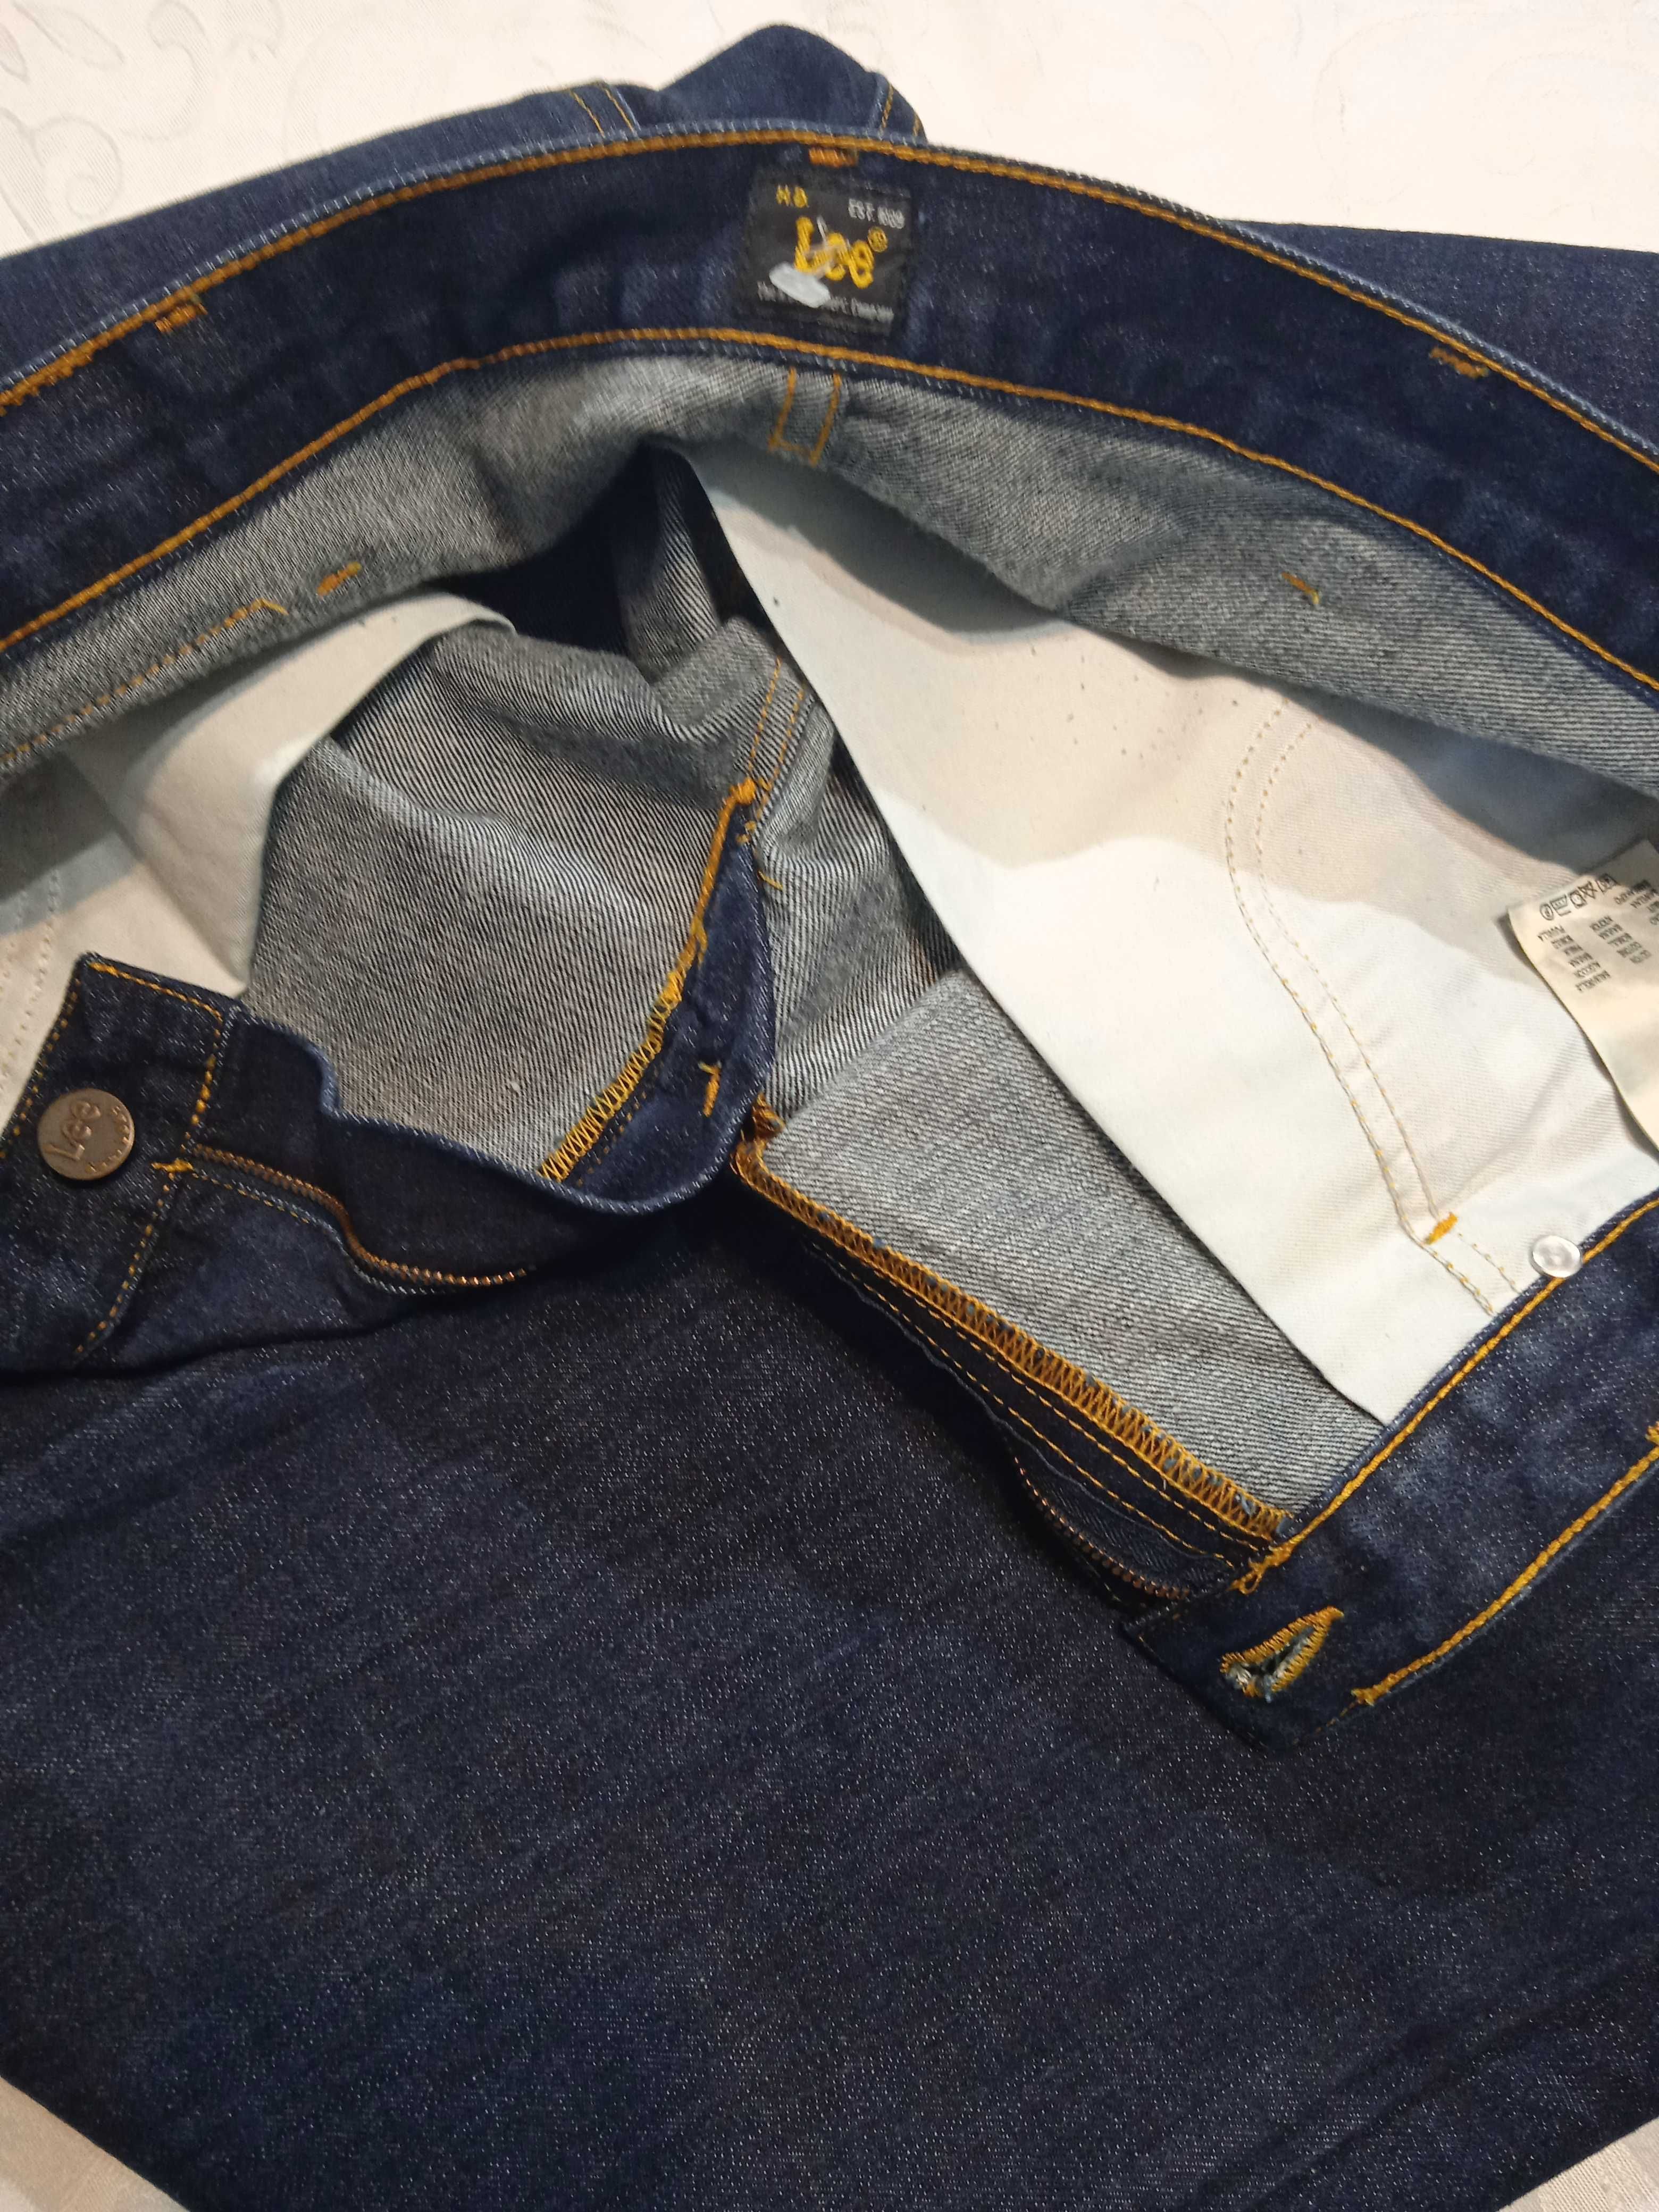 Lee Brooklyn Comfort Nowe granatowe spodnie jeansy W36 L32